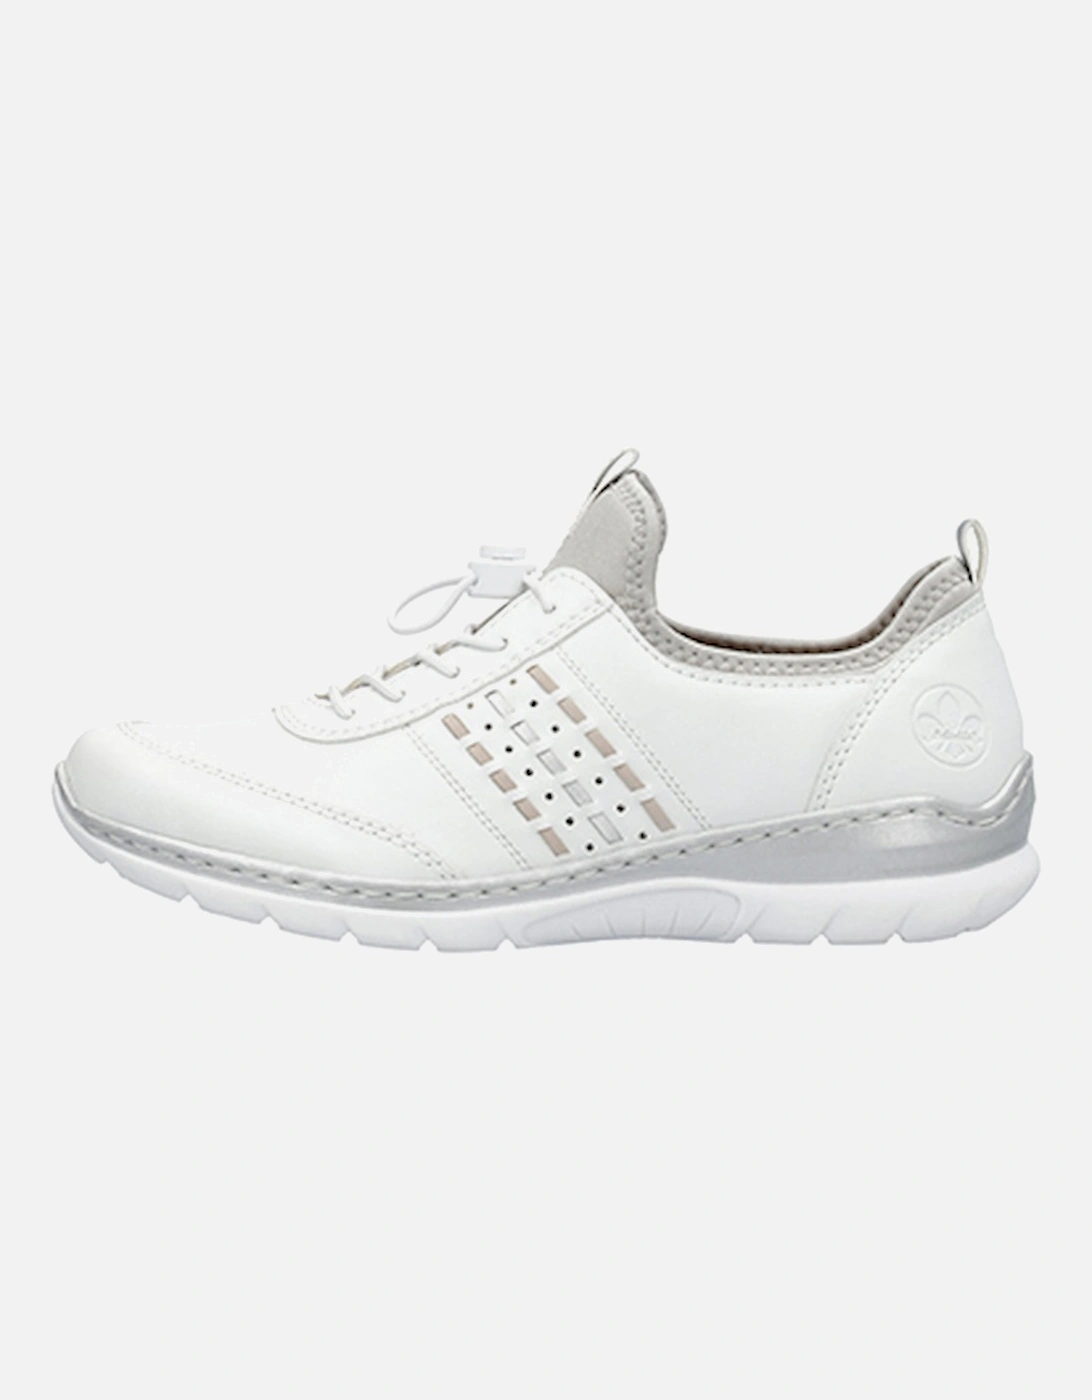 L3259-80 Women's Shoe White